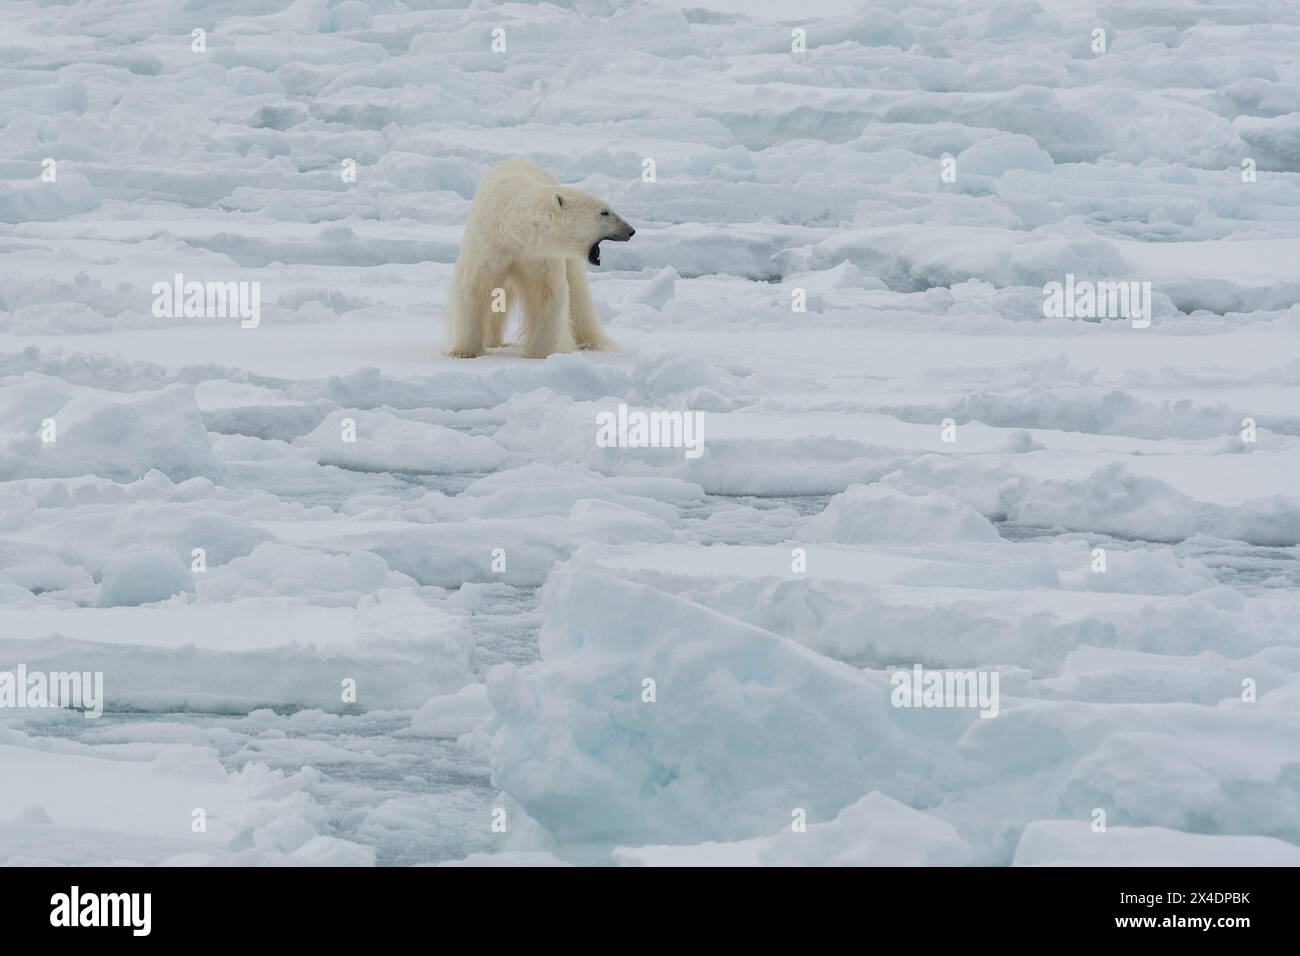 Ours polaire, Ursus maritimus, debout sur la calotte glaciaire polaire de l'océan Arctique Banque D'Images